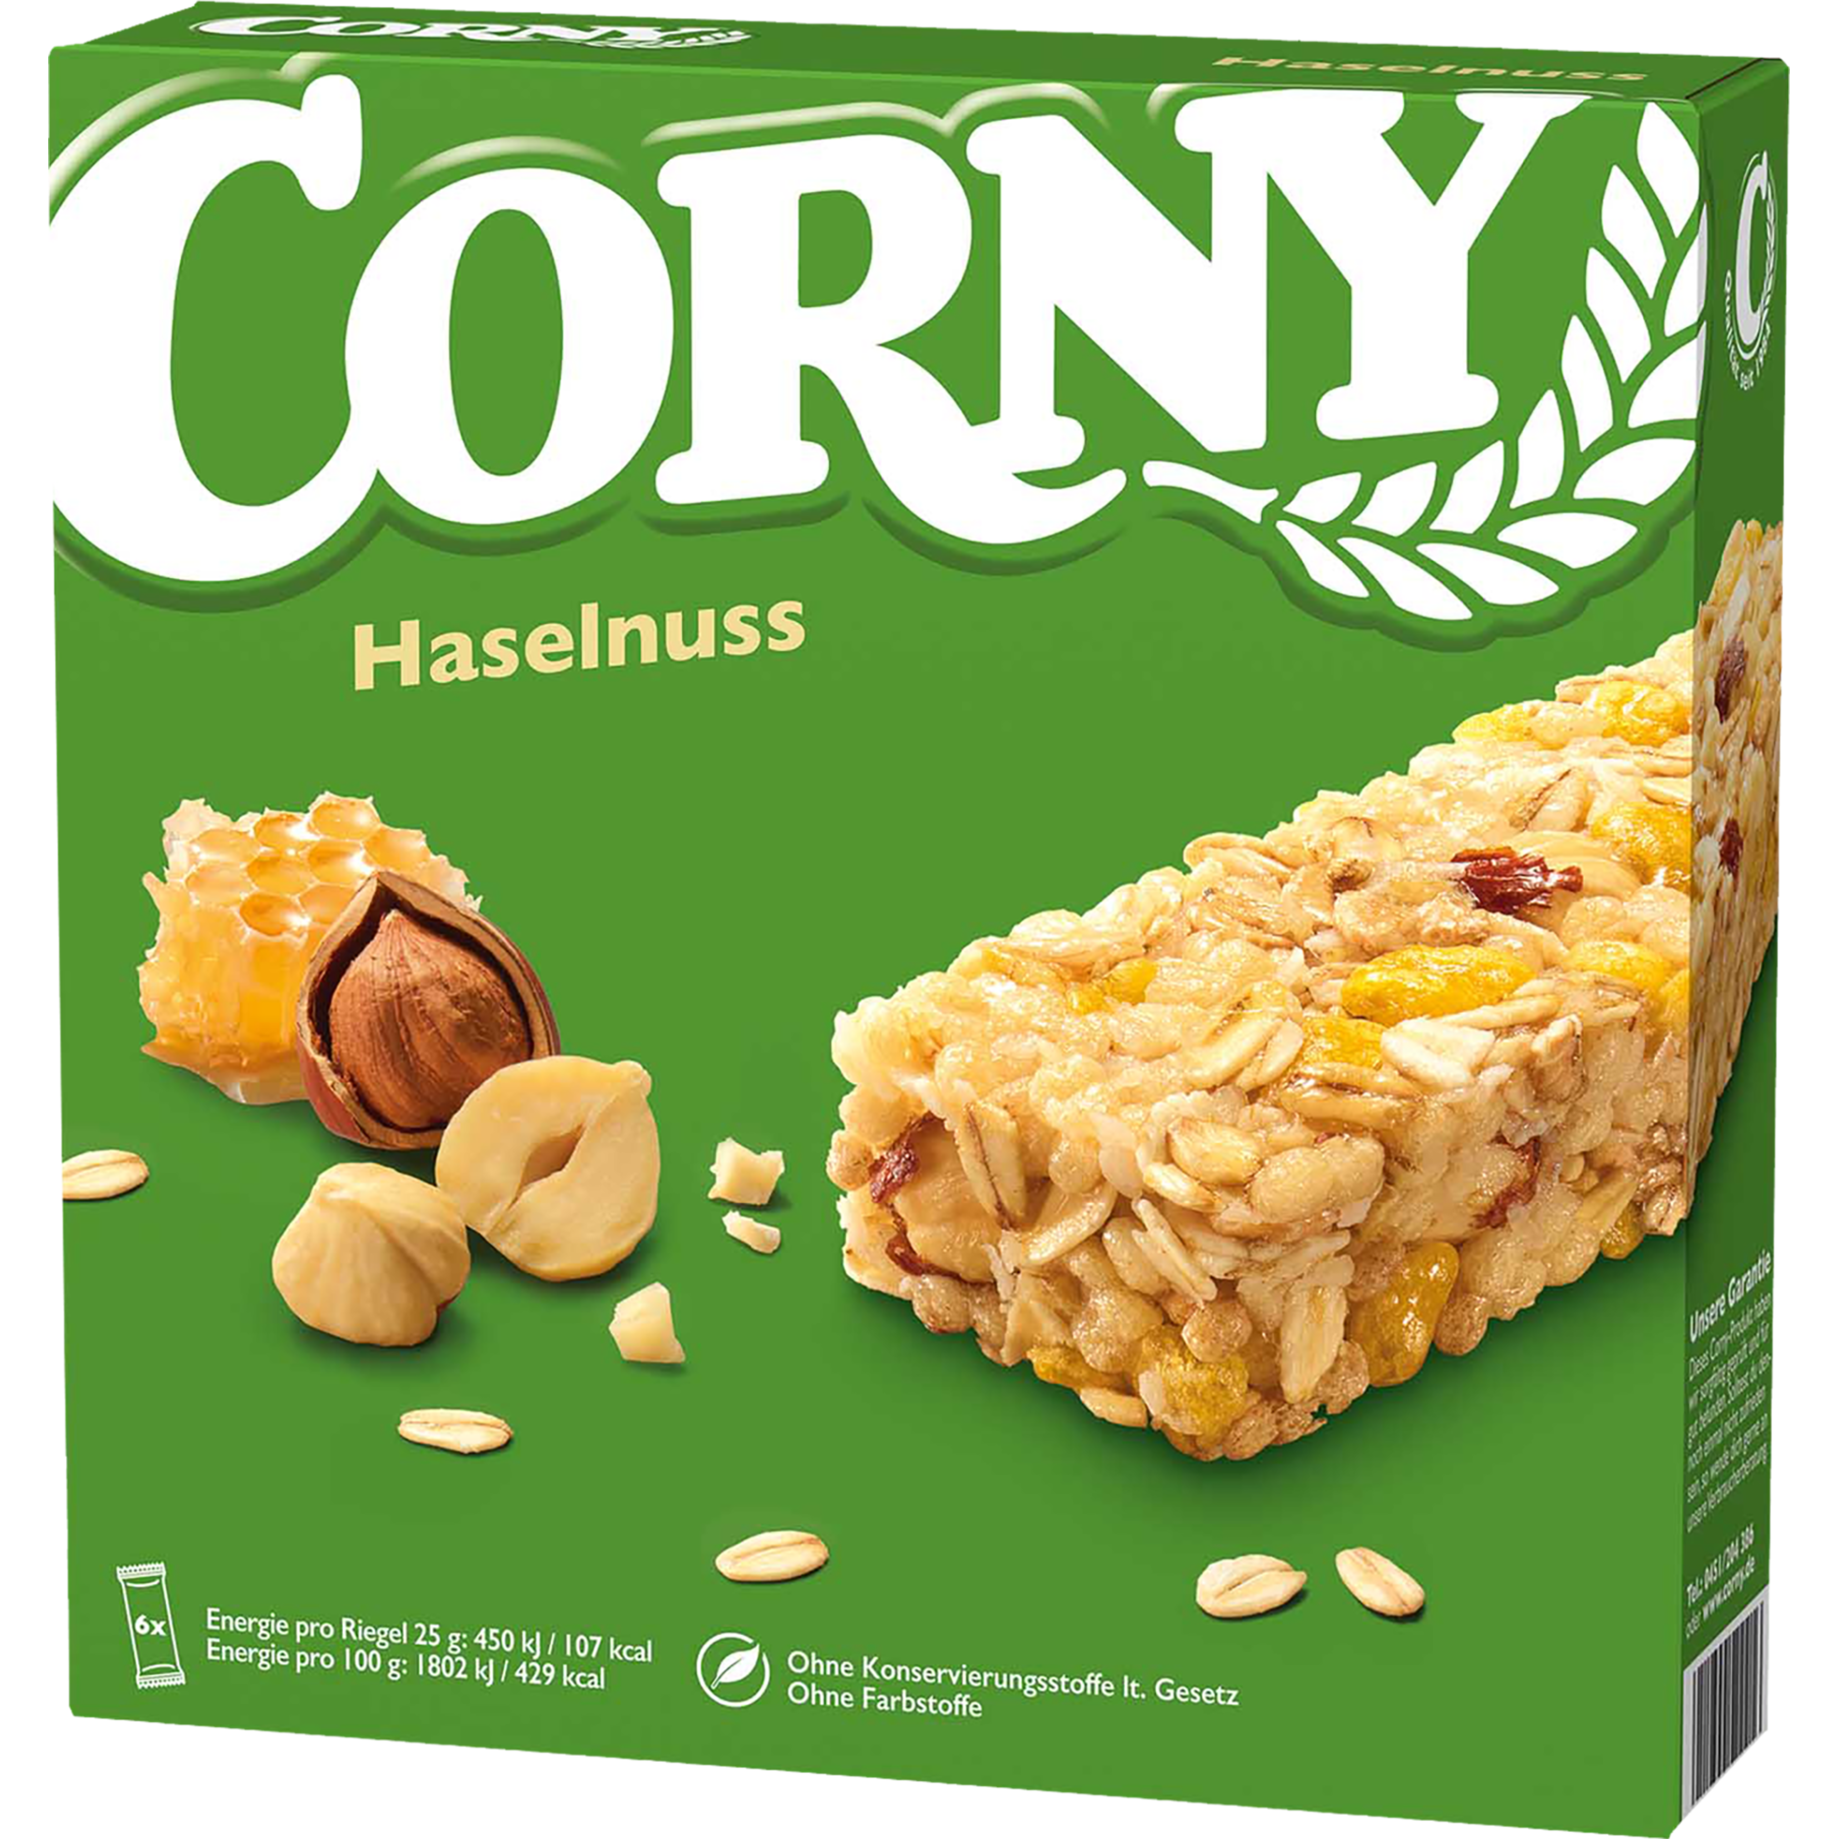 Müsliriegel Corny